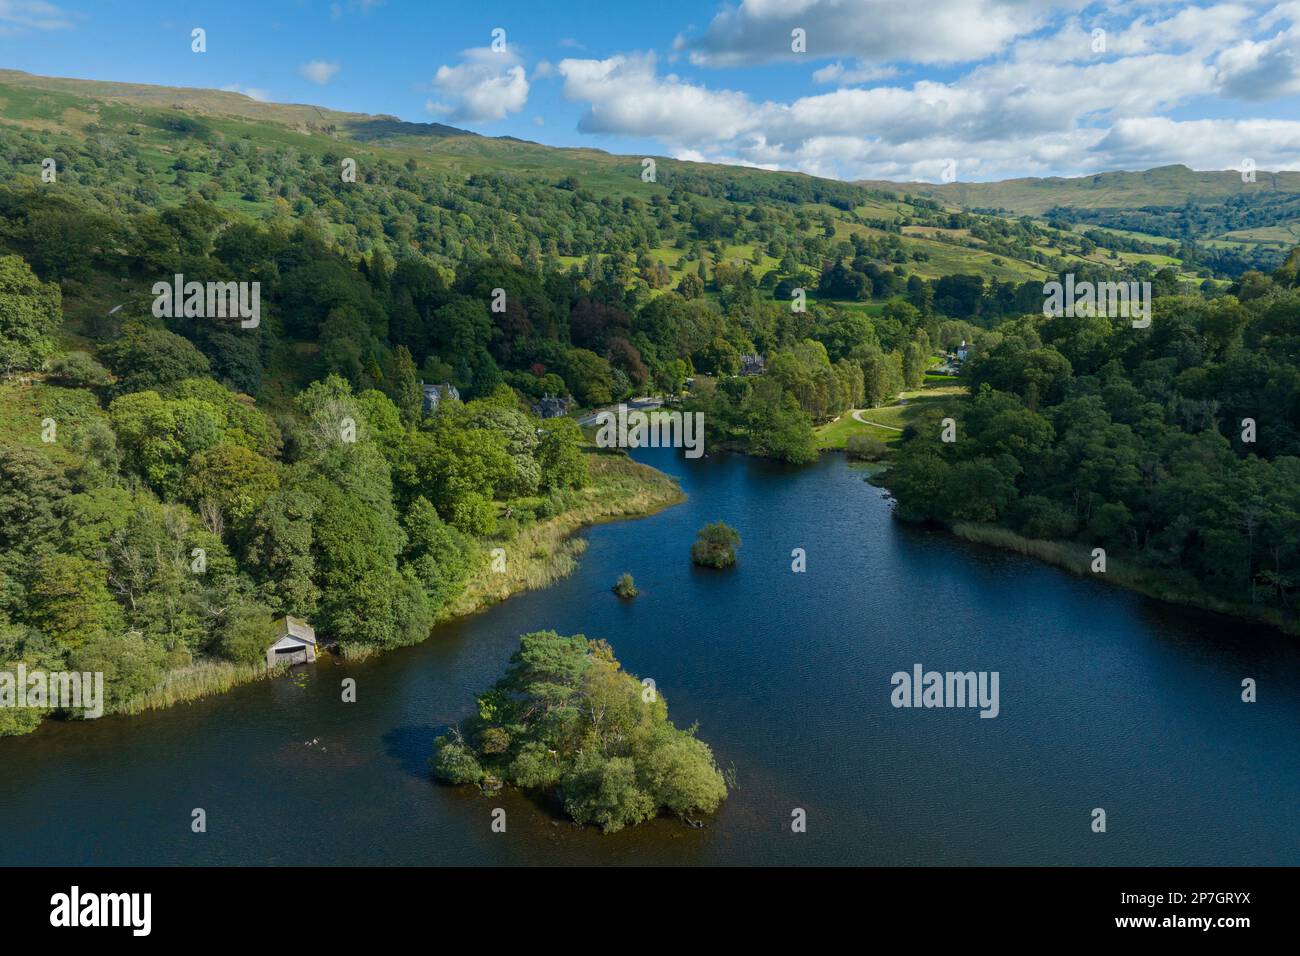 Angleterre, Cumbria, parc national de Lake District. Vue aérienne de Rydal en direction de la région des lacs du sud. Banque D'Images